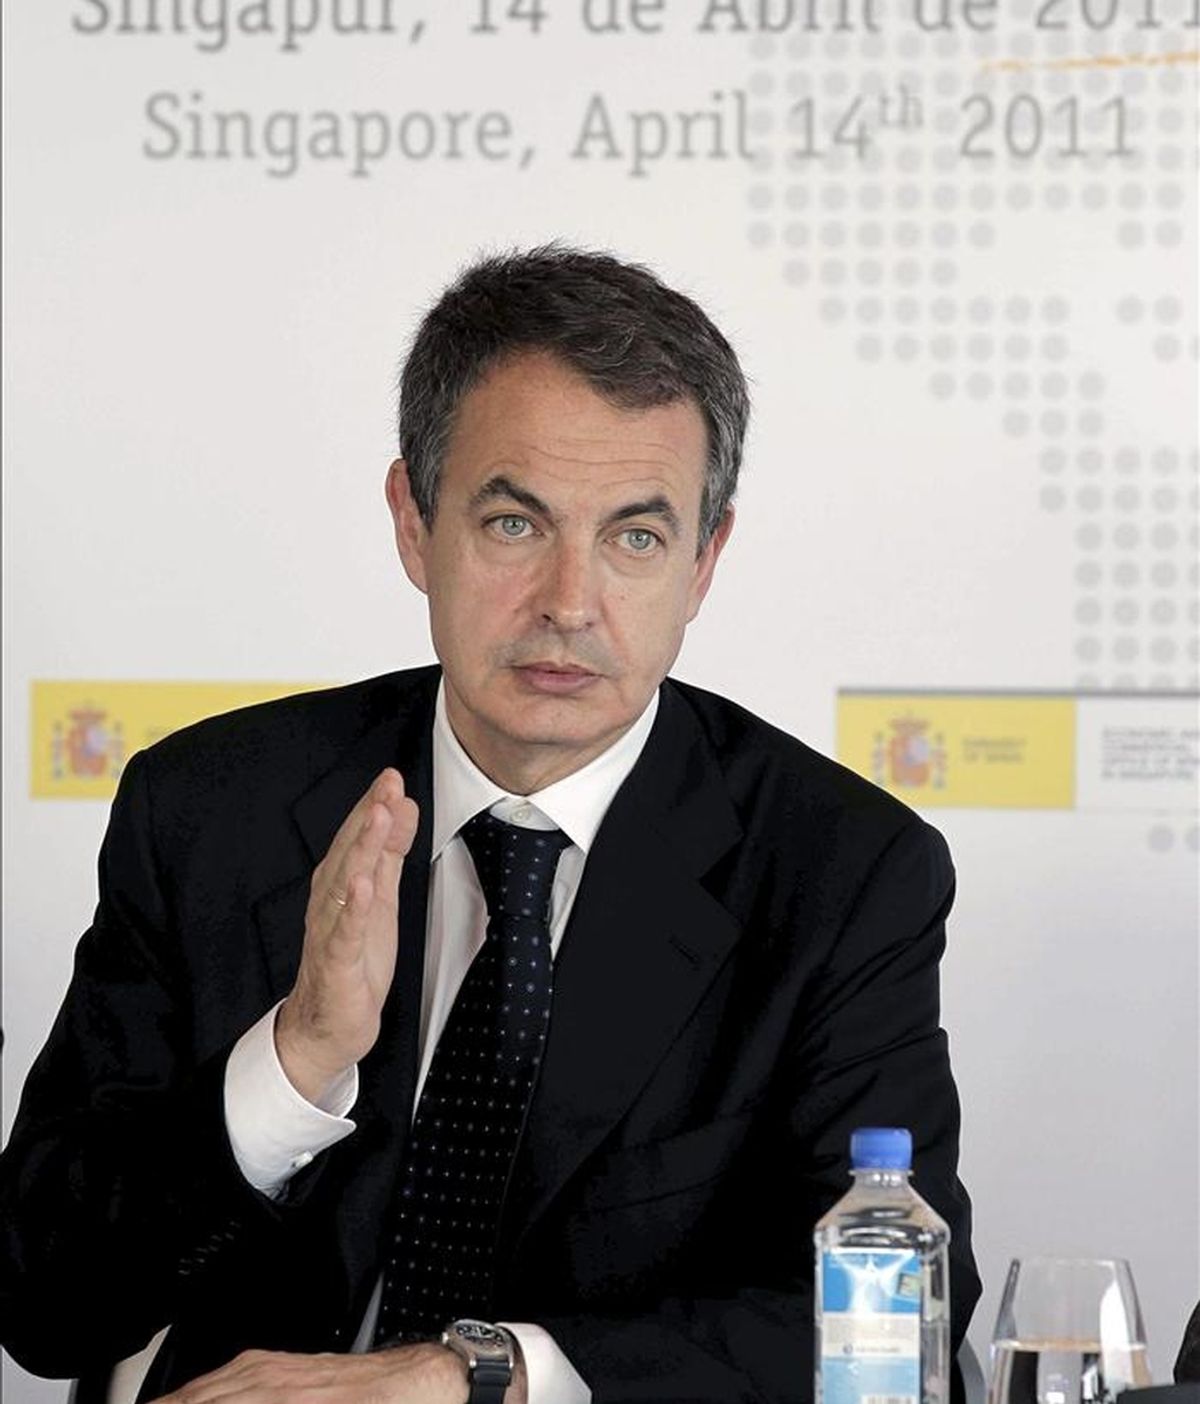 El presidente del Gobierno, José Luis Rodríguez Zapatero, durante la reunión que mantuvo hoy en Singapur, acompañado por el ministro de Industria, Miguel Sebastián, con los principales bancos y fondos de inversión del país antes de viajar a la isla china de Hainan. EFE